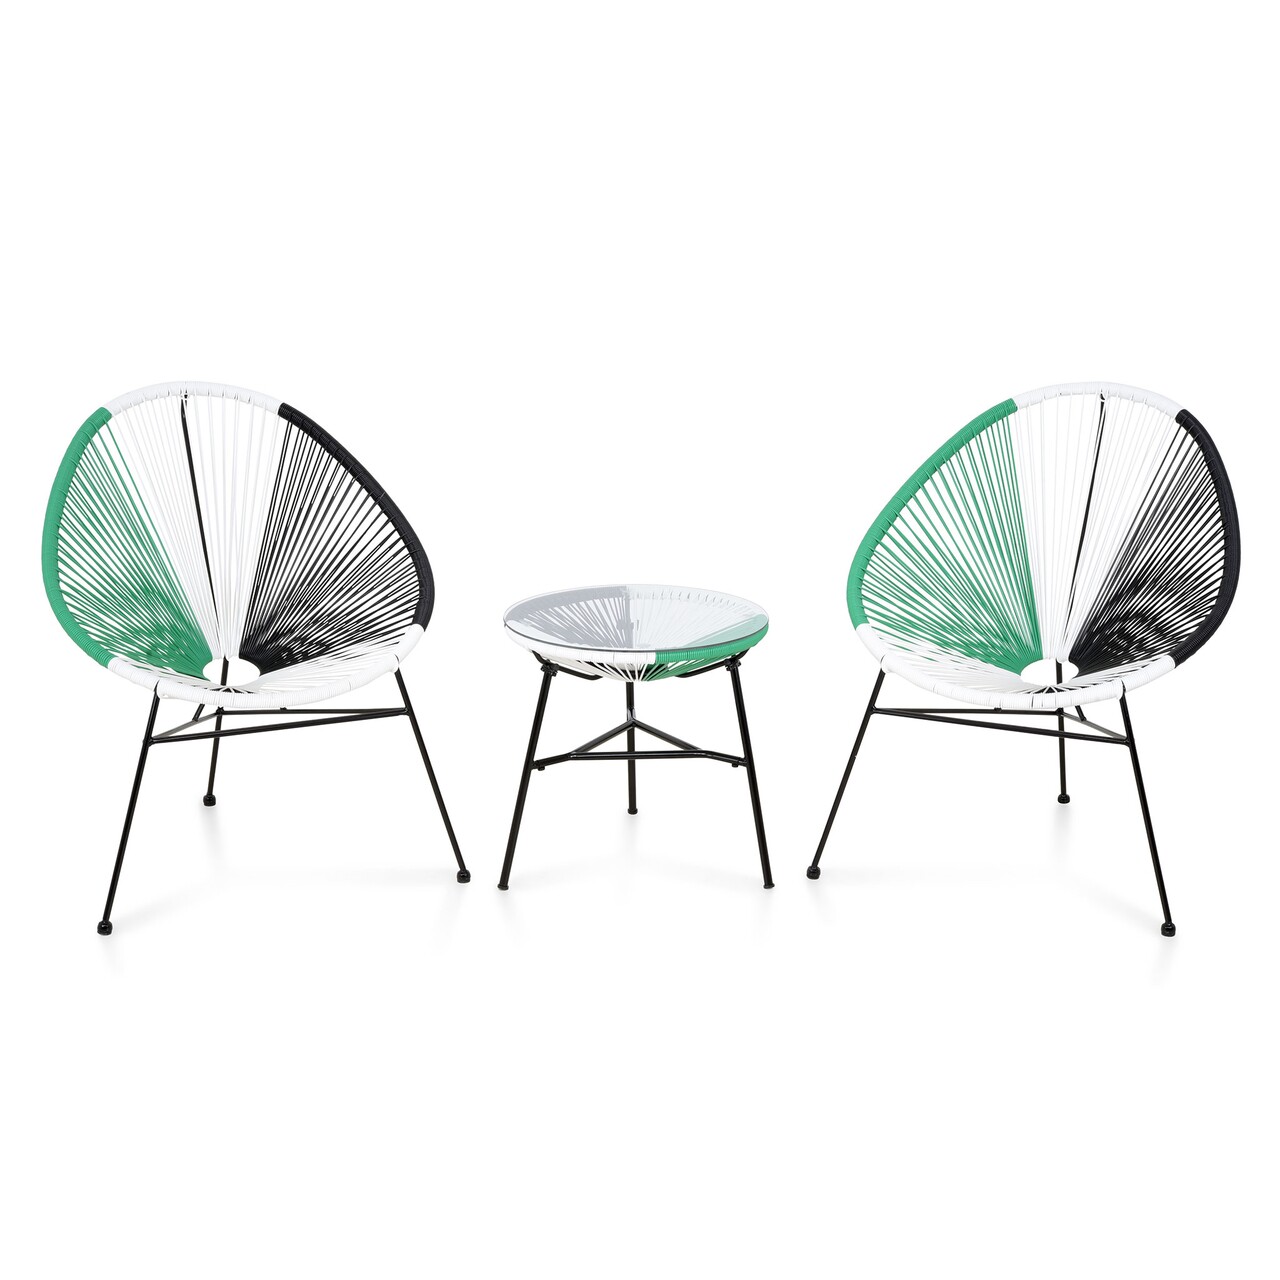 Maison corfu kerti terasz/bútor szett 2 fotel + asztalka, acél, zöld/fehér/fekete